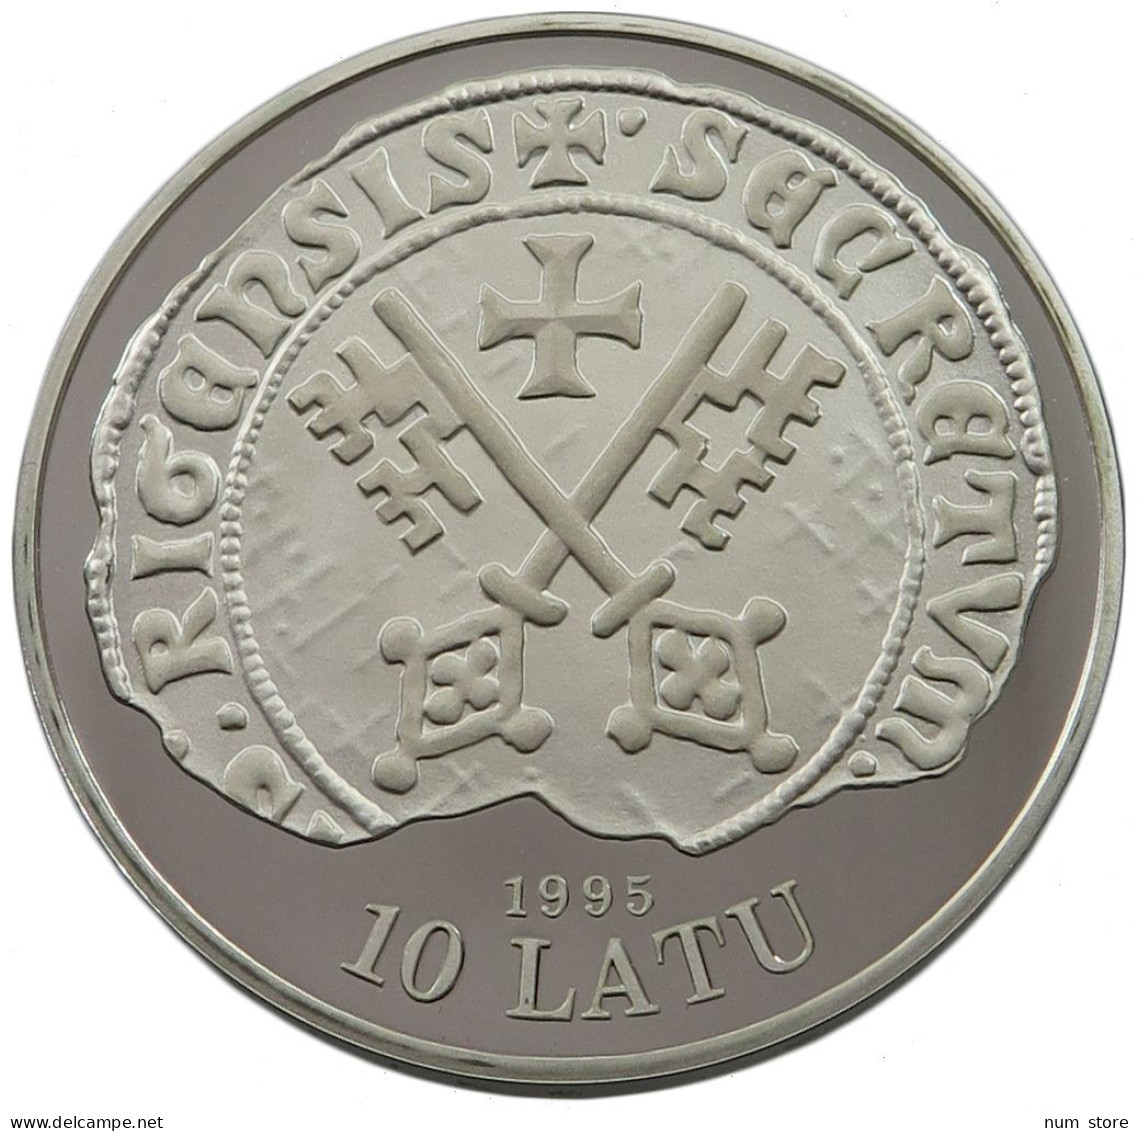 LATVIA 10 LATU 1995 RIGA #w032 0317 - Letland